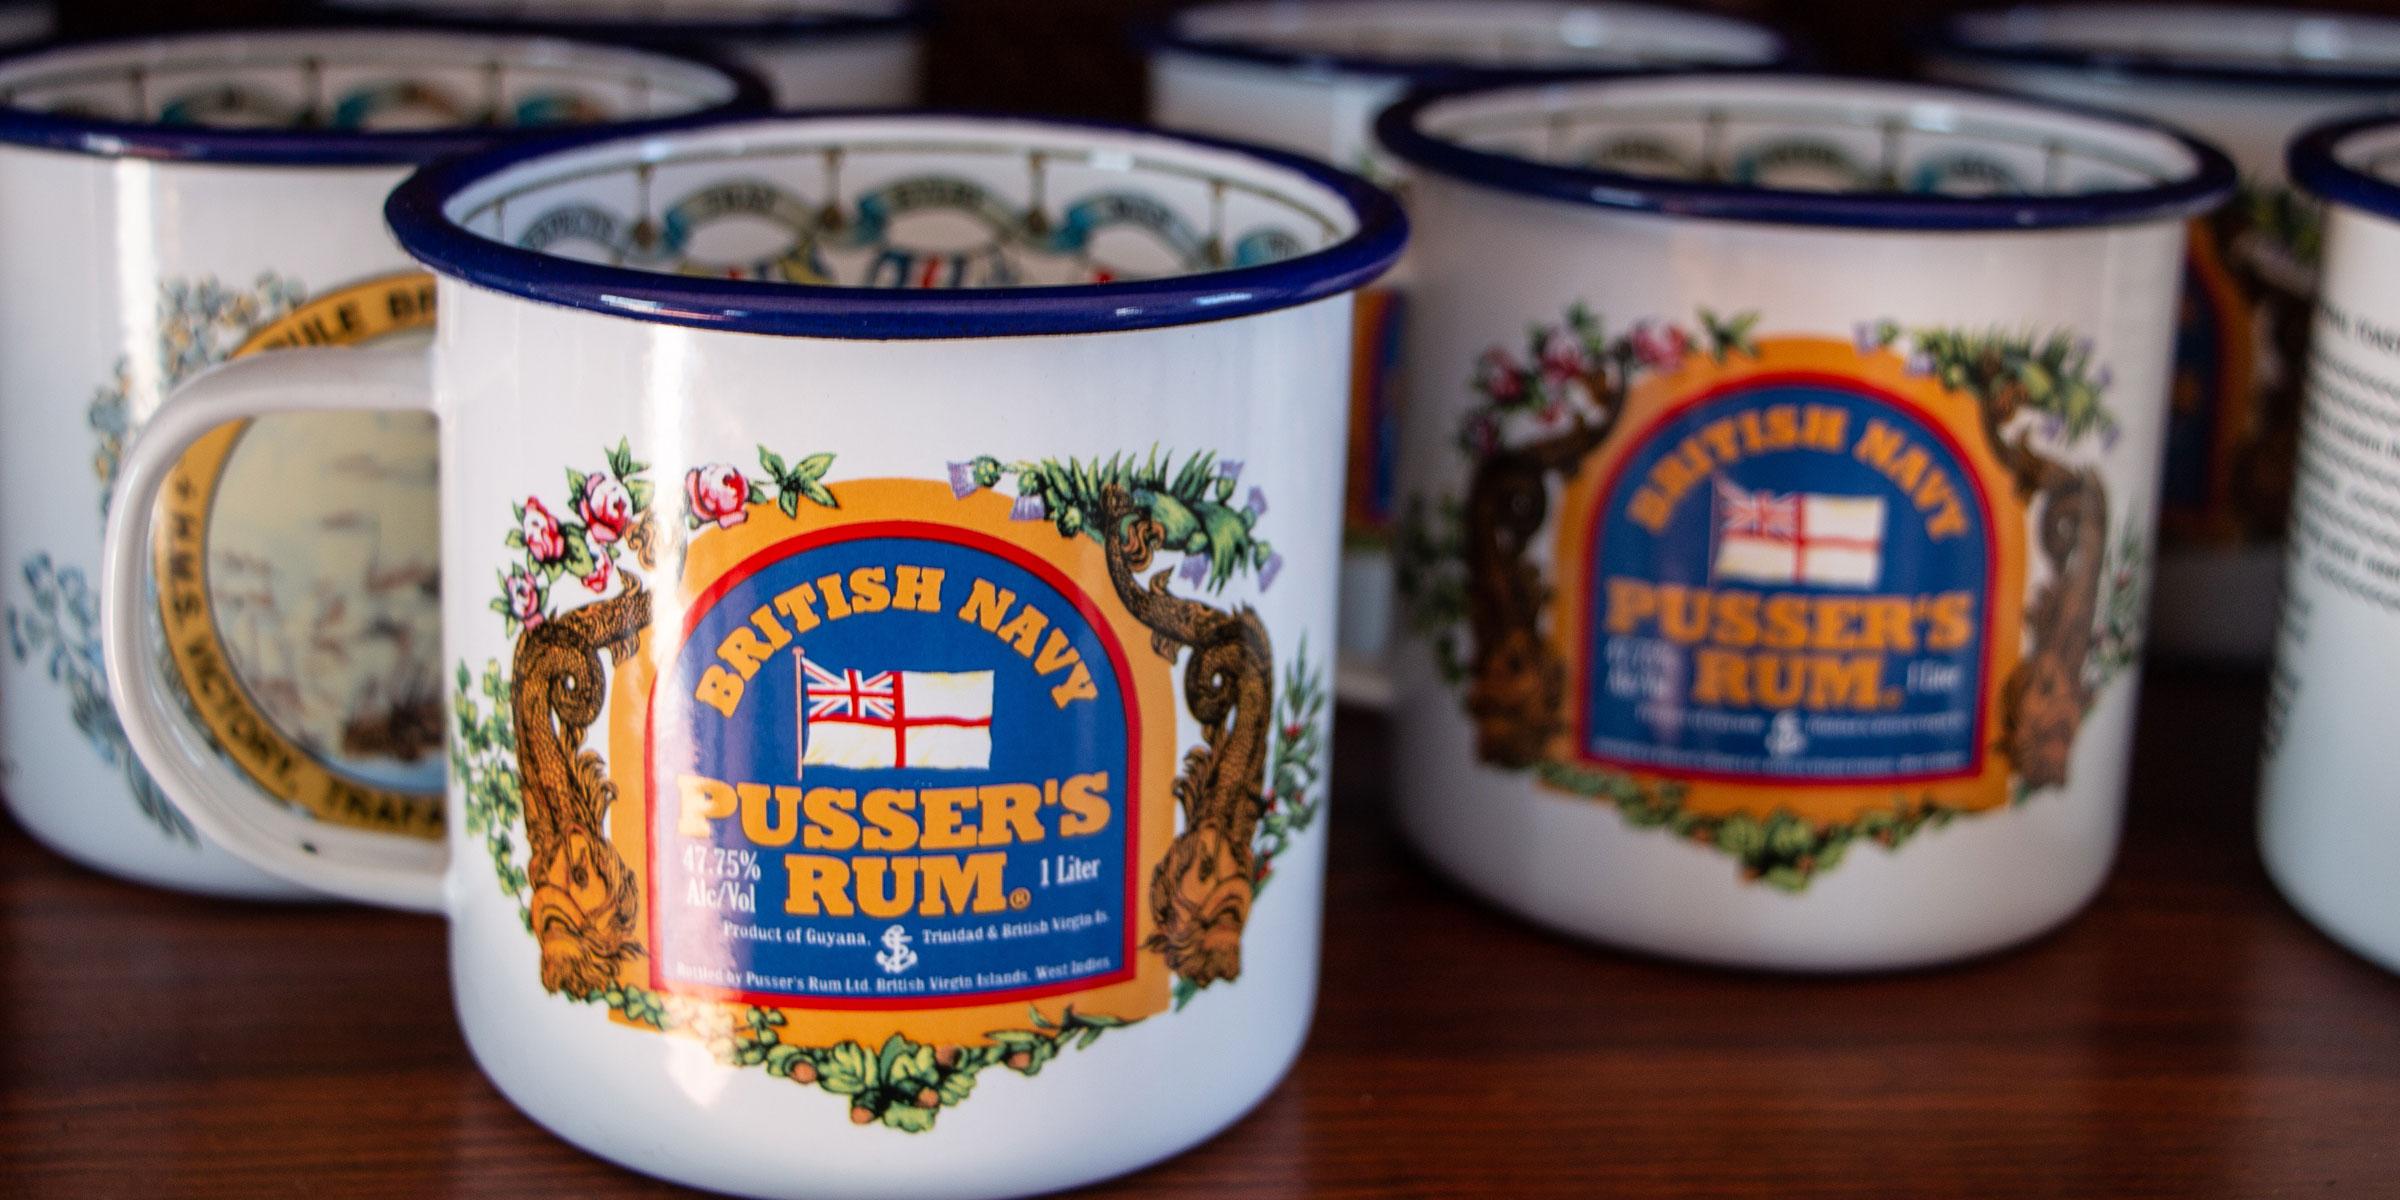 Pusser's Rum cups